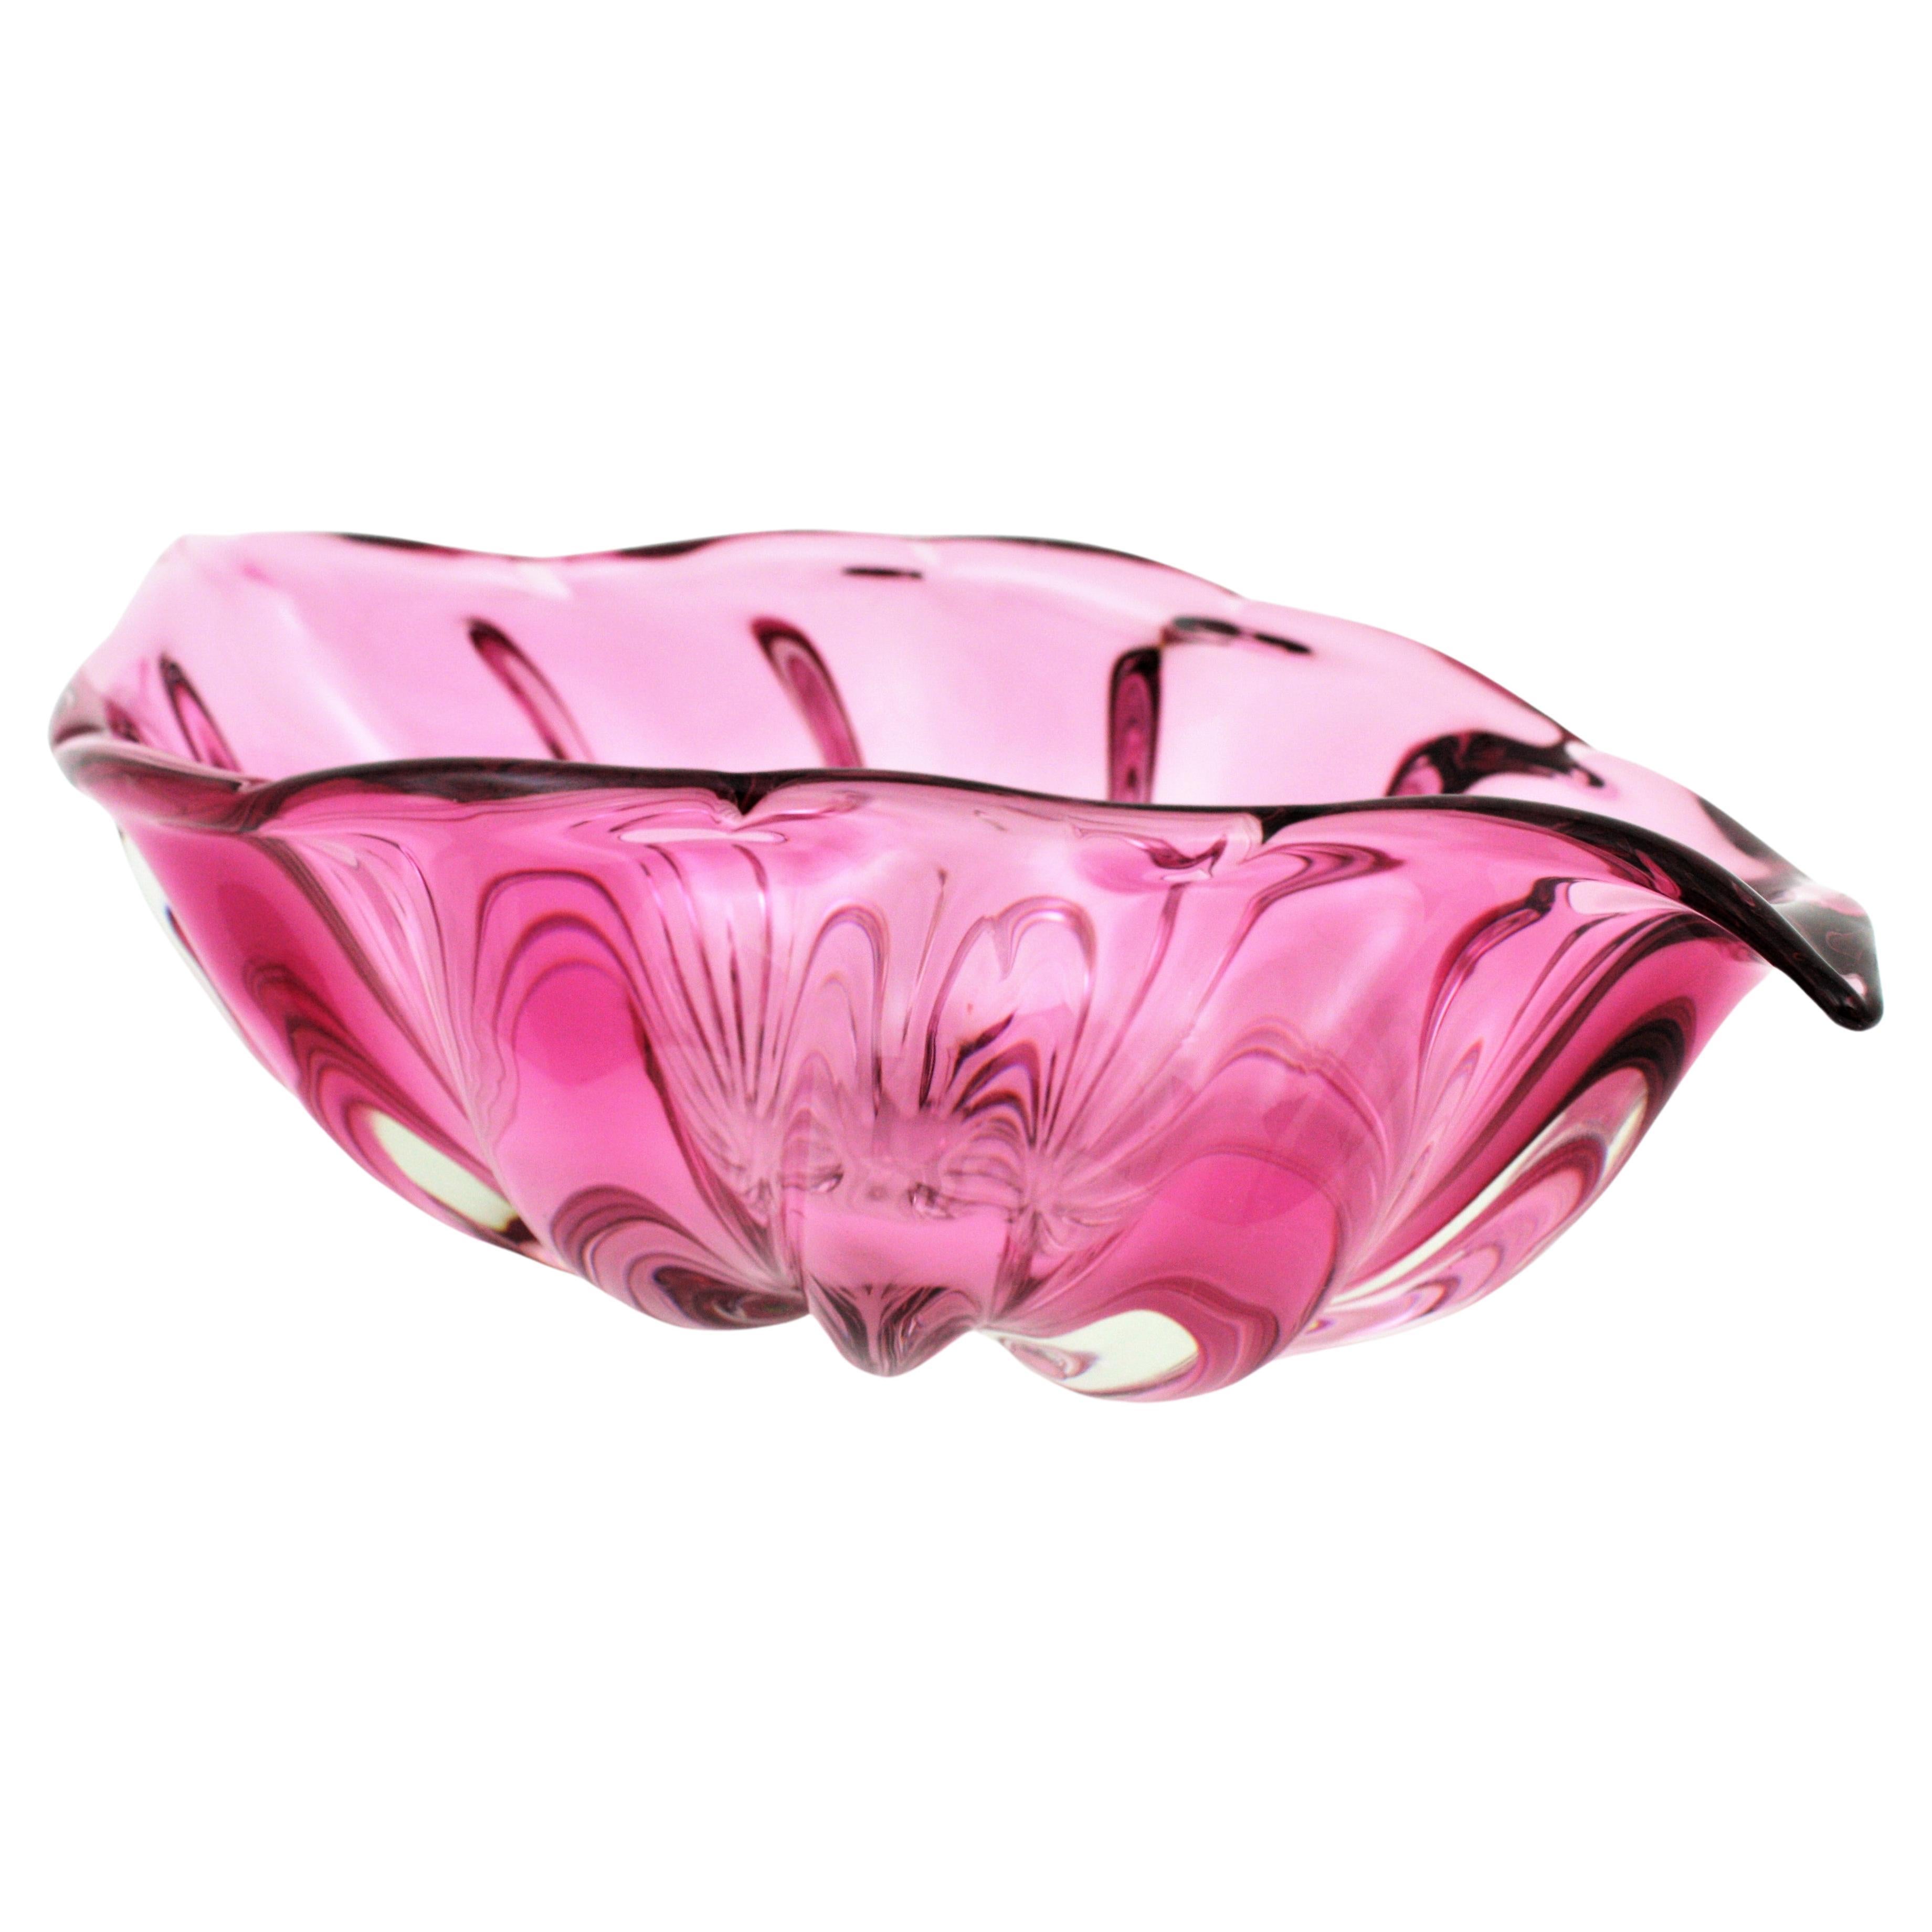 large pink bowl